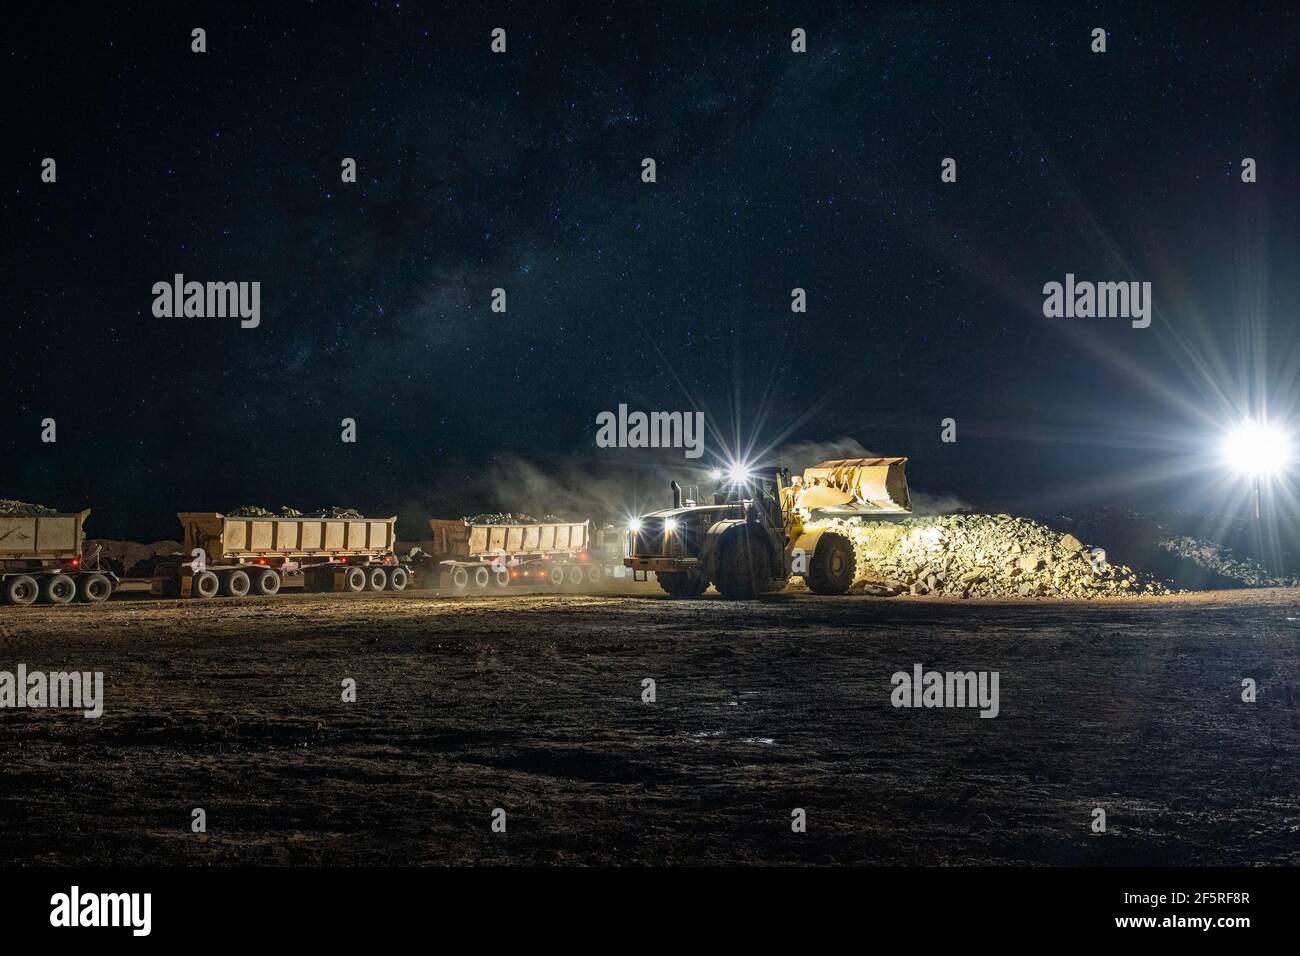 Attività di estrazione a cielo aperto di notte con carri di perforazione, dumper e caricatori che operano sotto i proiettori. Foto Stock